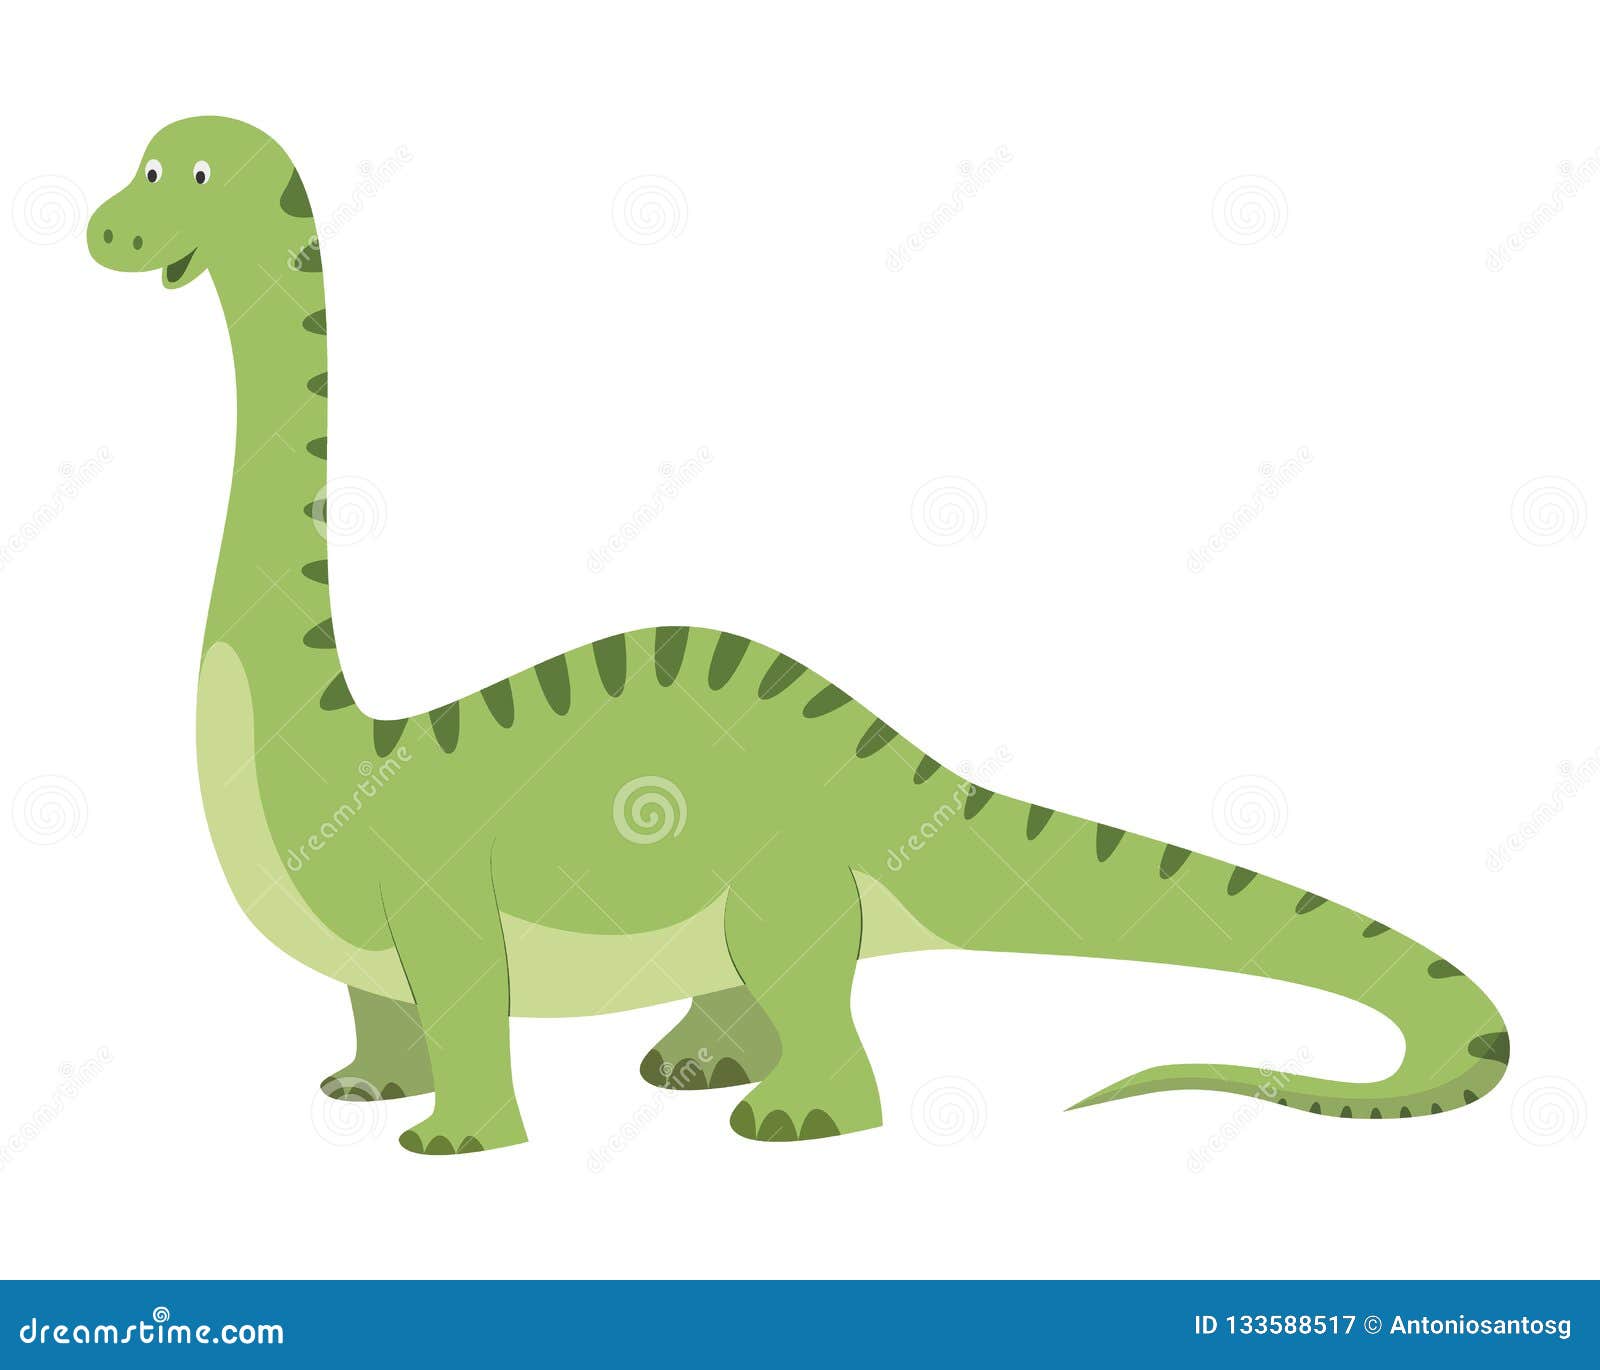 腕龙、梁龙、马门溪龙等长脖子长尾巴的恐龙，外形区别到底明显在哪里呢？ - 知乎